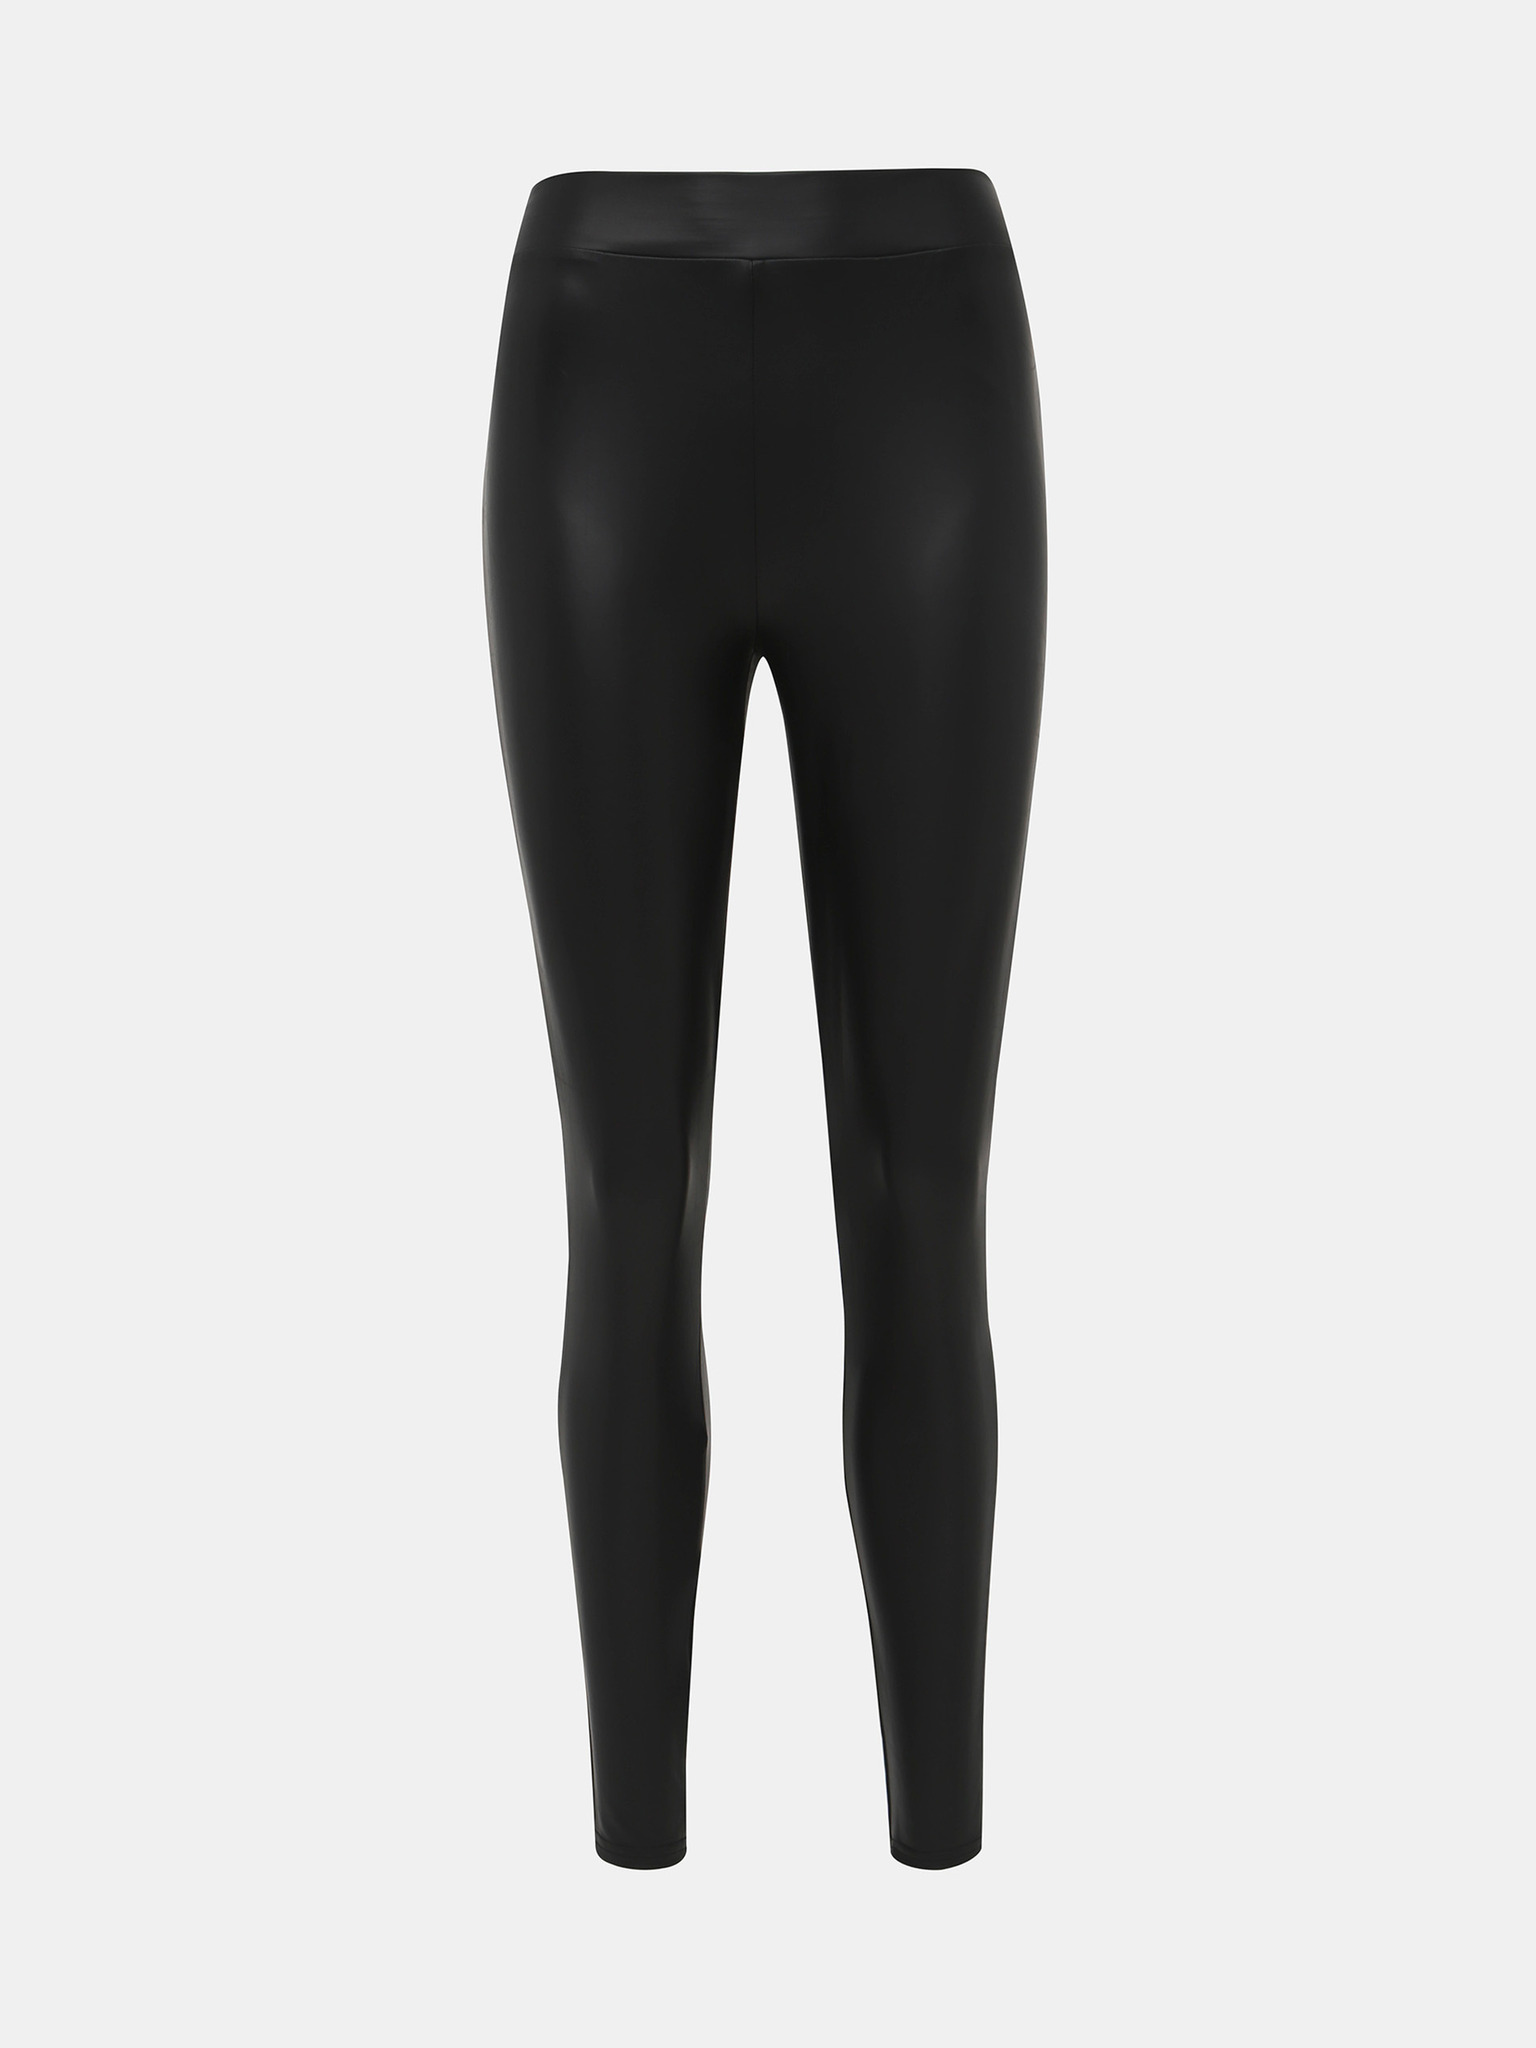 Womens Translucent Fleece Leg Velvet Plush Leggings Primark Slim Fit  Thermal Underwear Bottoms For Winter From Luote, $9.85 | DHgate.Com